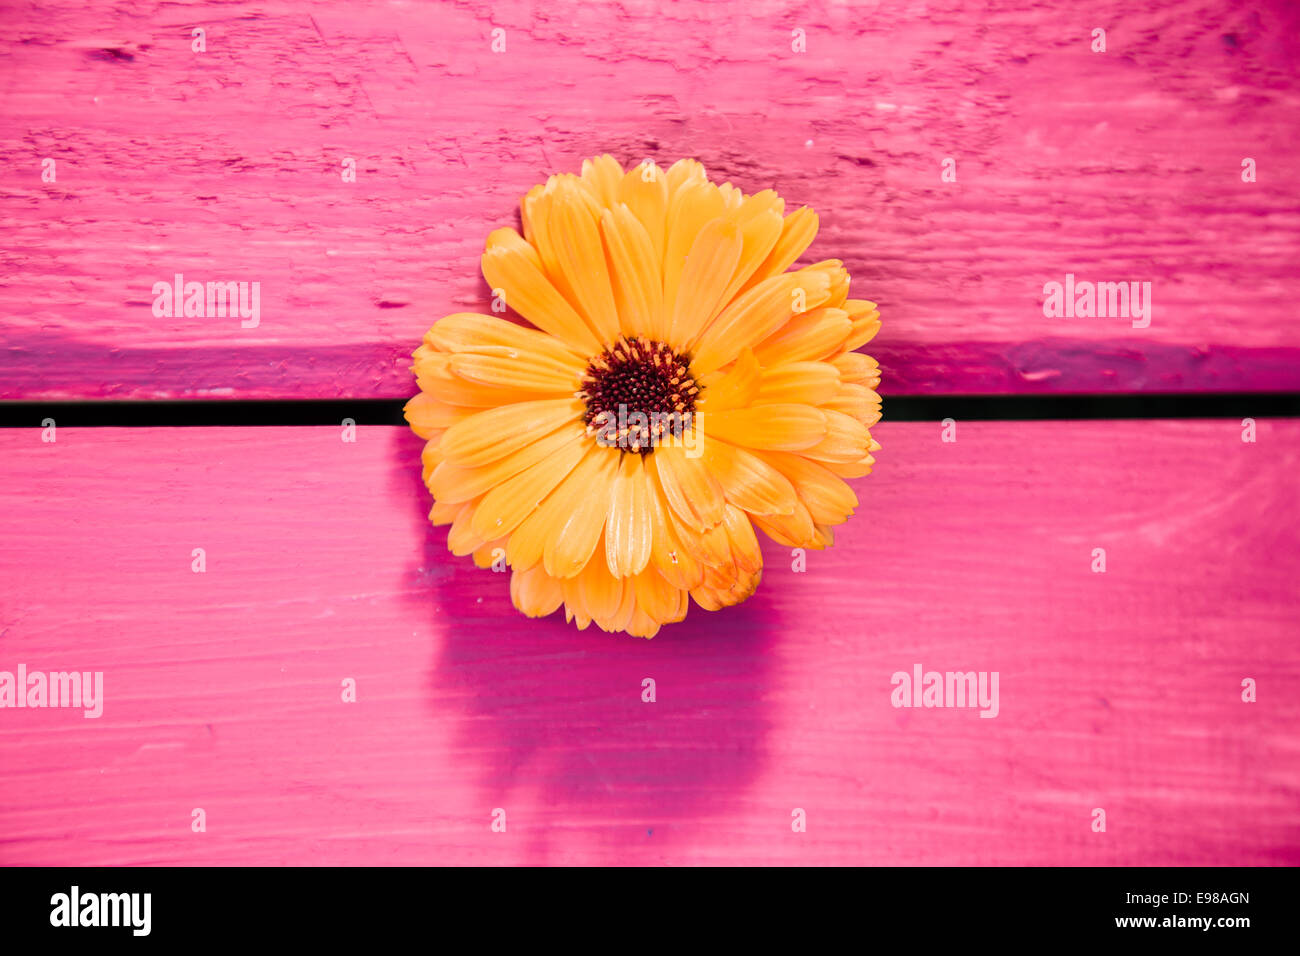 Gelbe Gerbera Blume, Symbol der Delikatesse und Unterscheidung, auf einem Holztisch in rosa lackiert Stockfoto